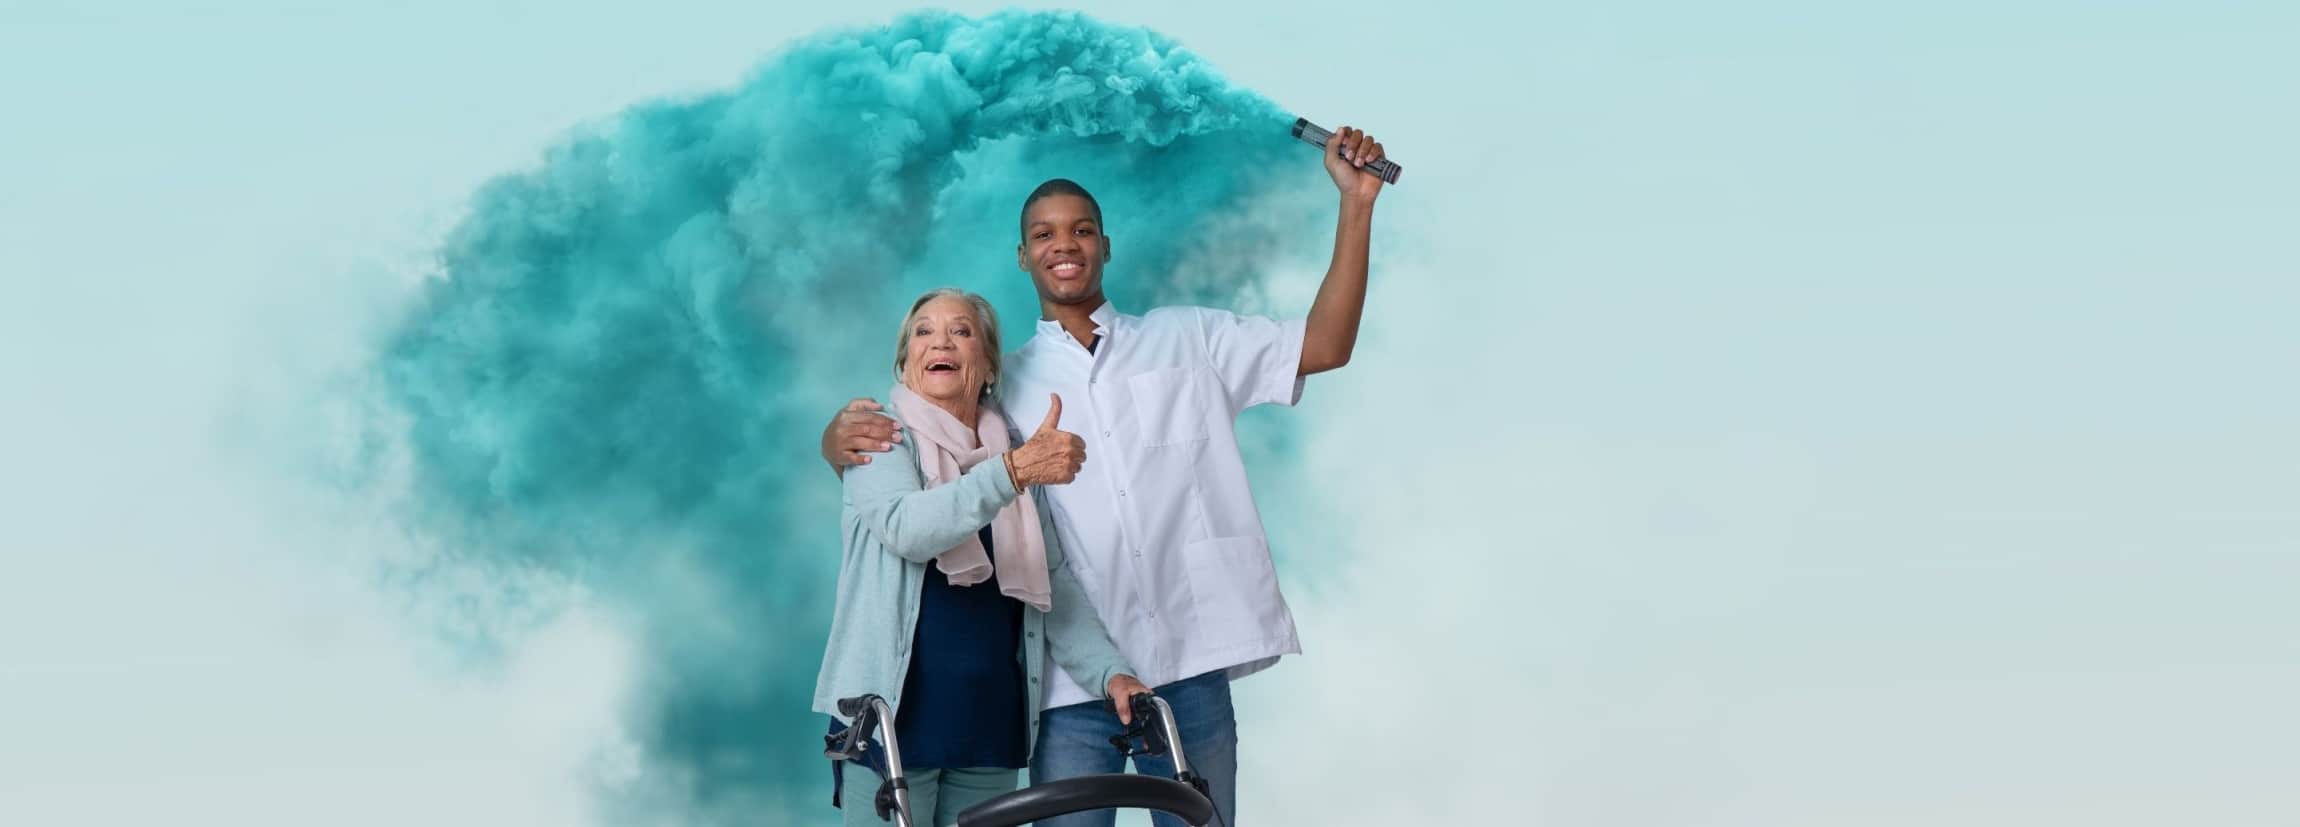 Mannelijke verzorgende met getinte huidskleur omarmt een oudere vrouw en houdt fakkel blauwe rook vast